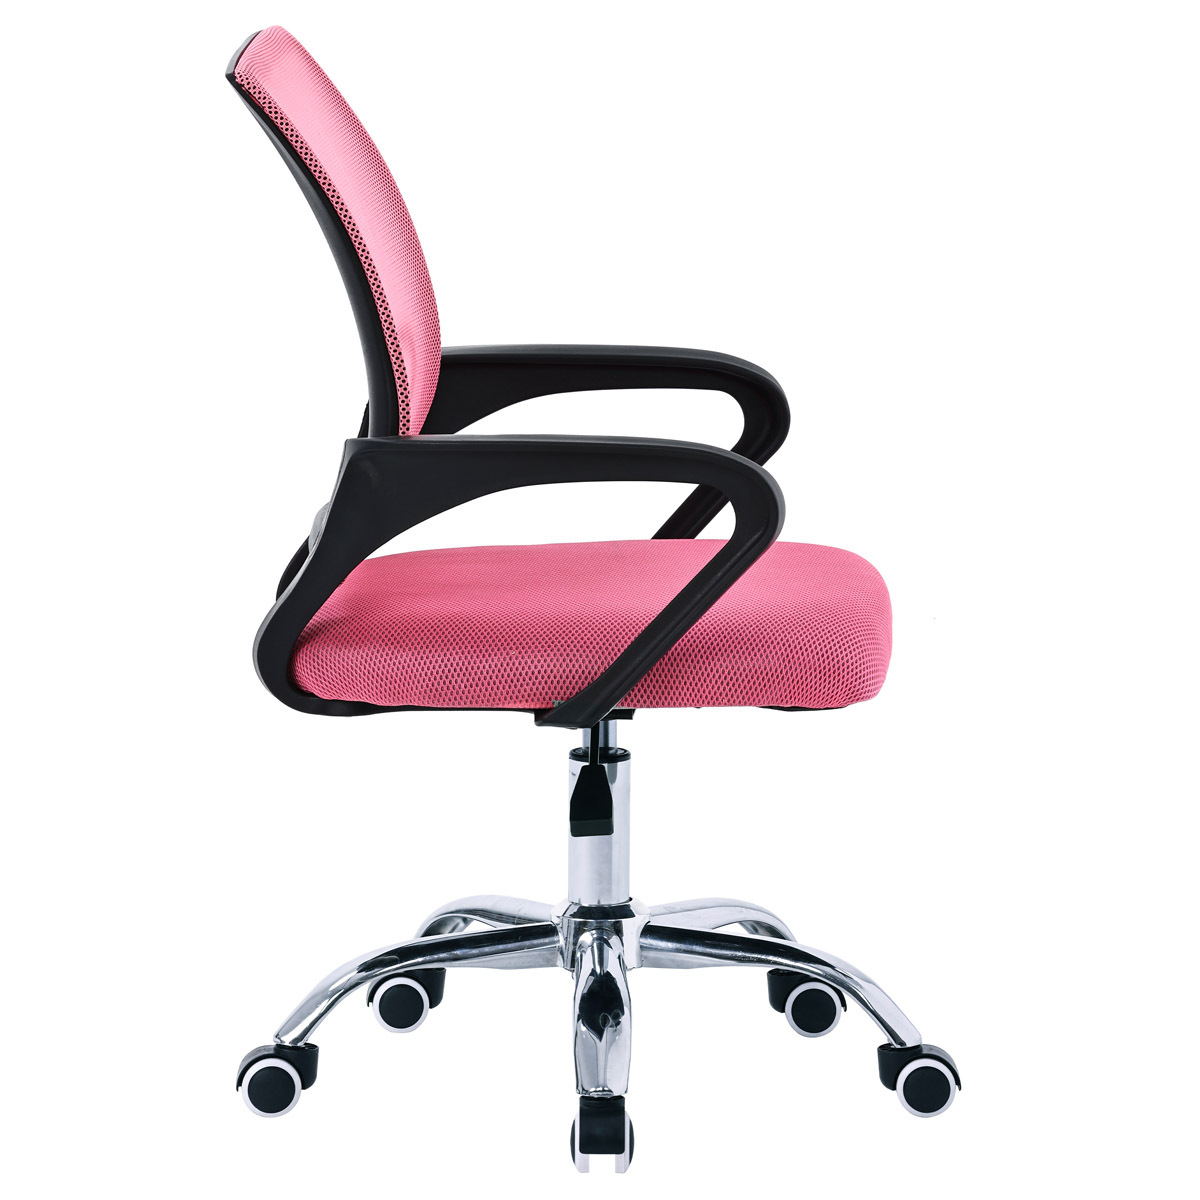 Kancelářská židle, potah růžová látka MESH a síťovina MESH, výškově nastavitelná, kovový chromovaný kříž